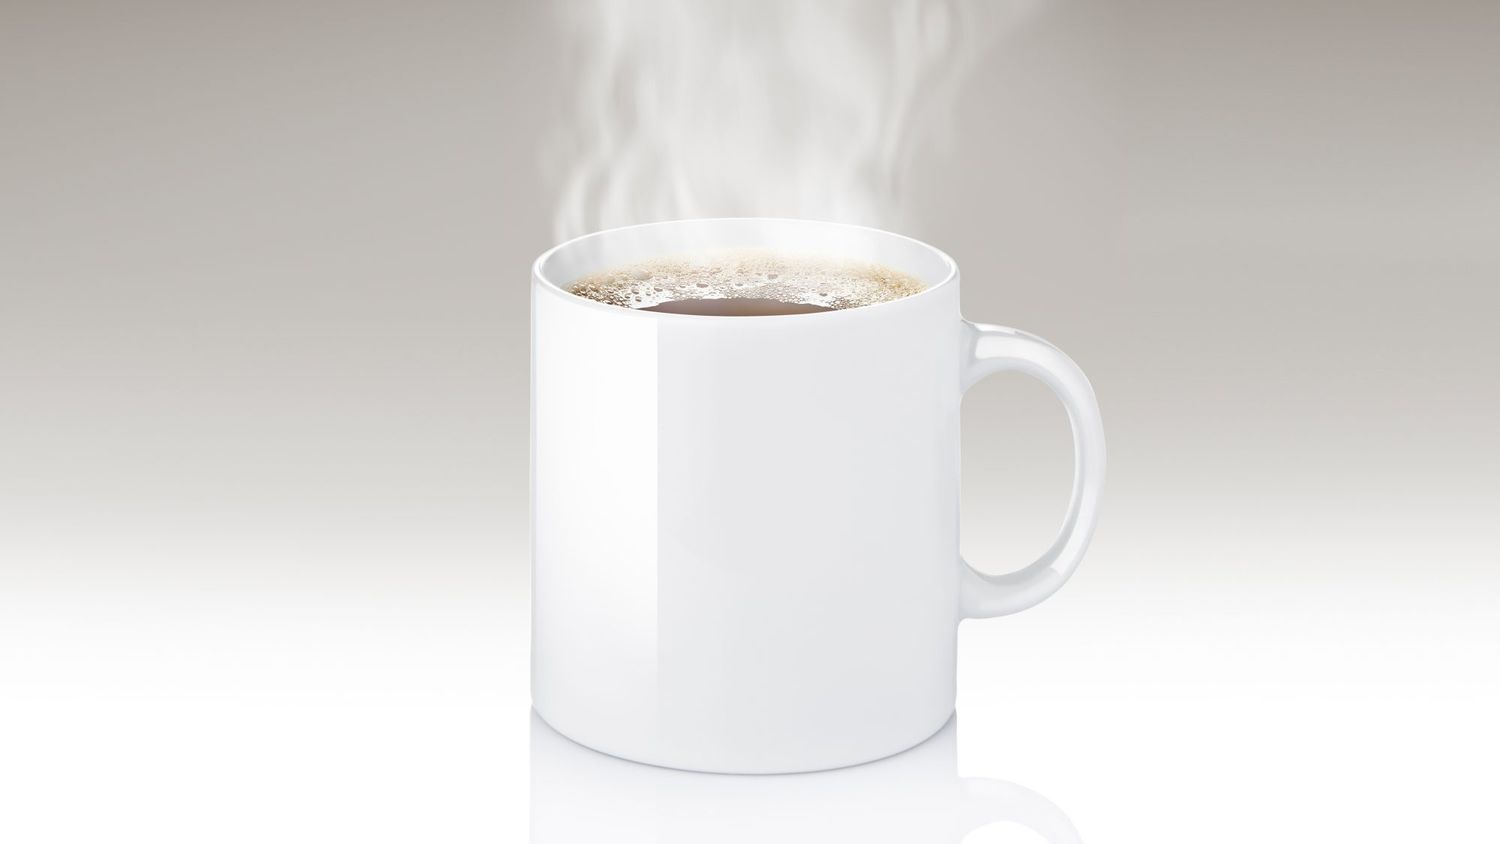 brain-boosting beverages: coffee